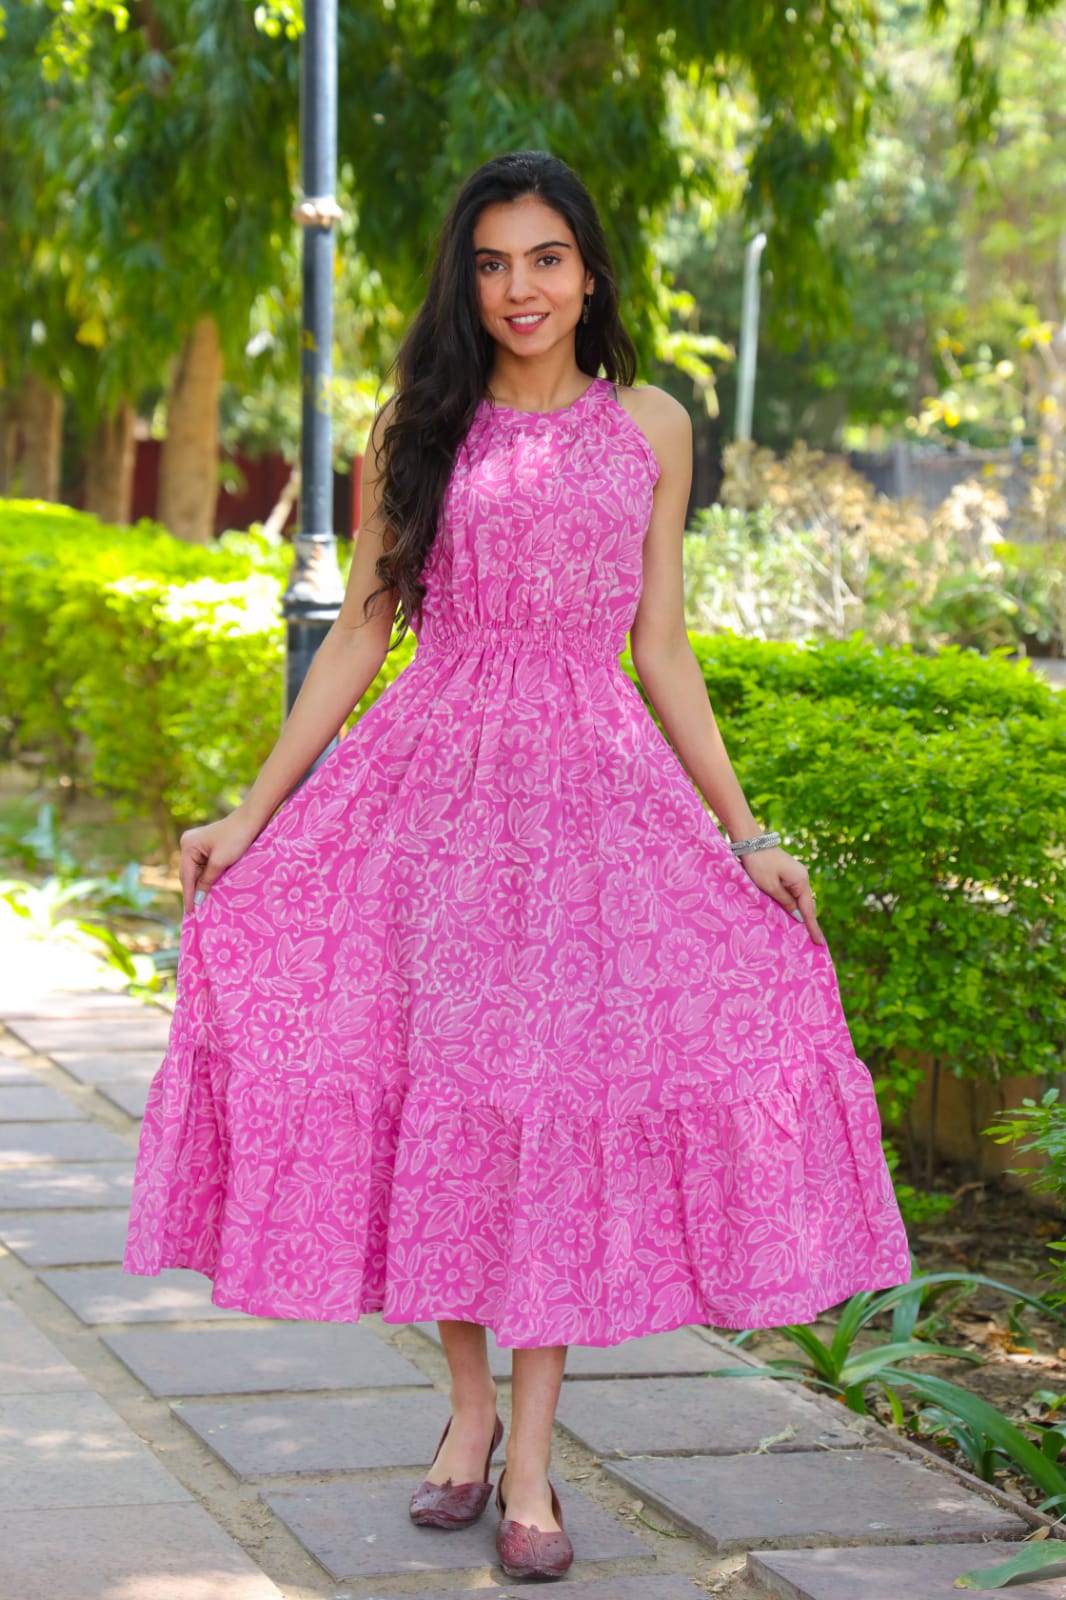 Hand Block Printed Dress Summer Dress Cotton Dress Floral Print